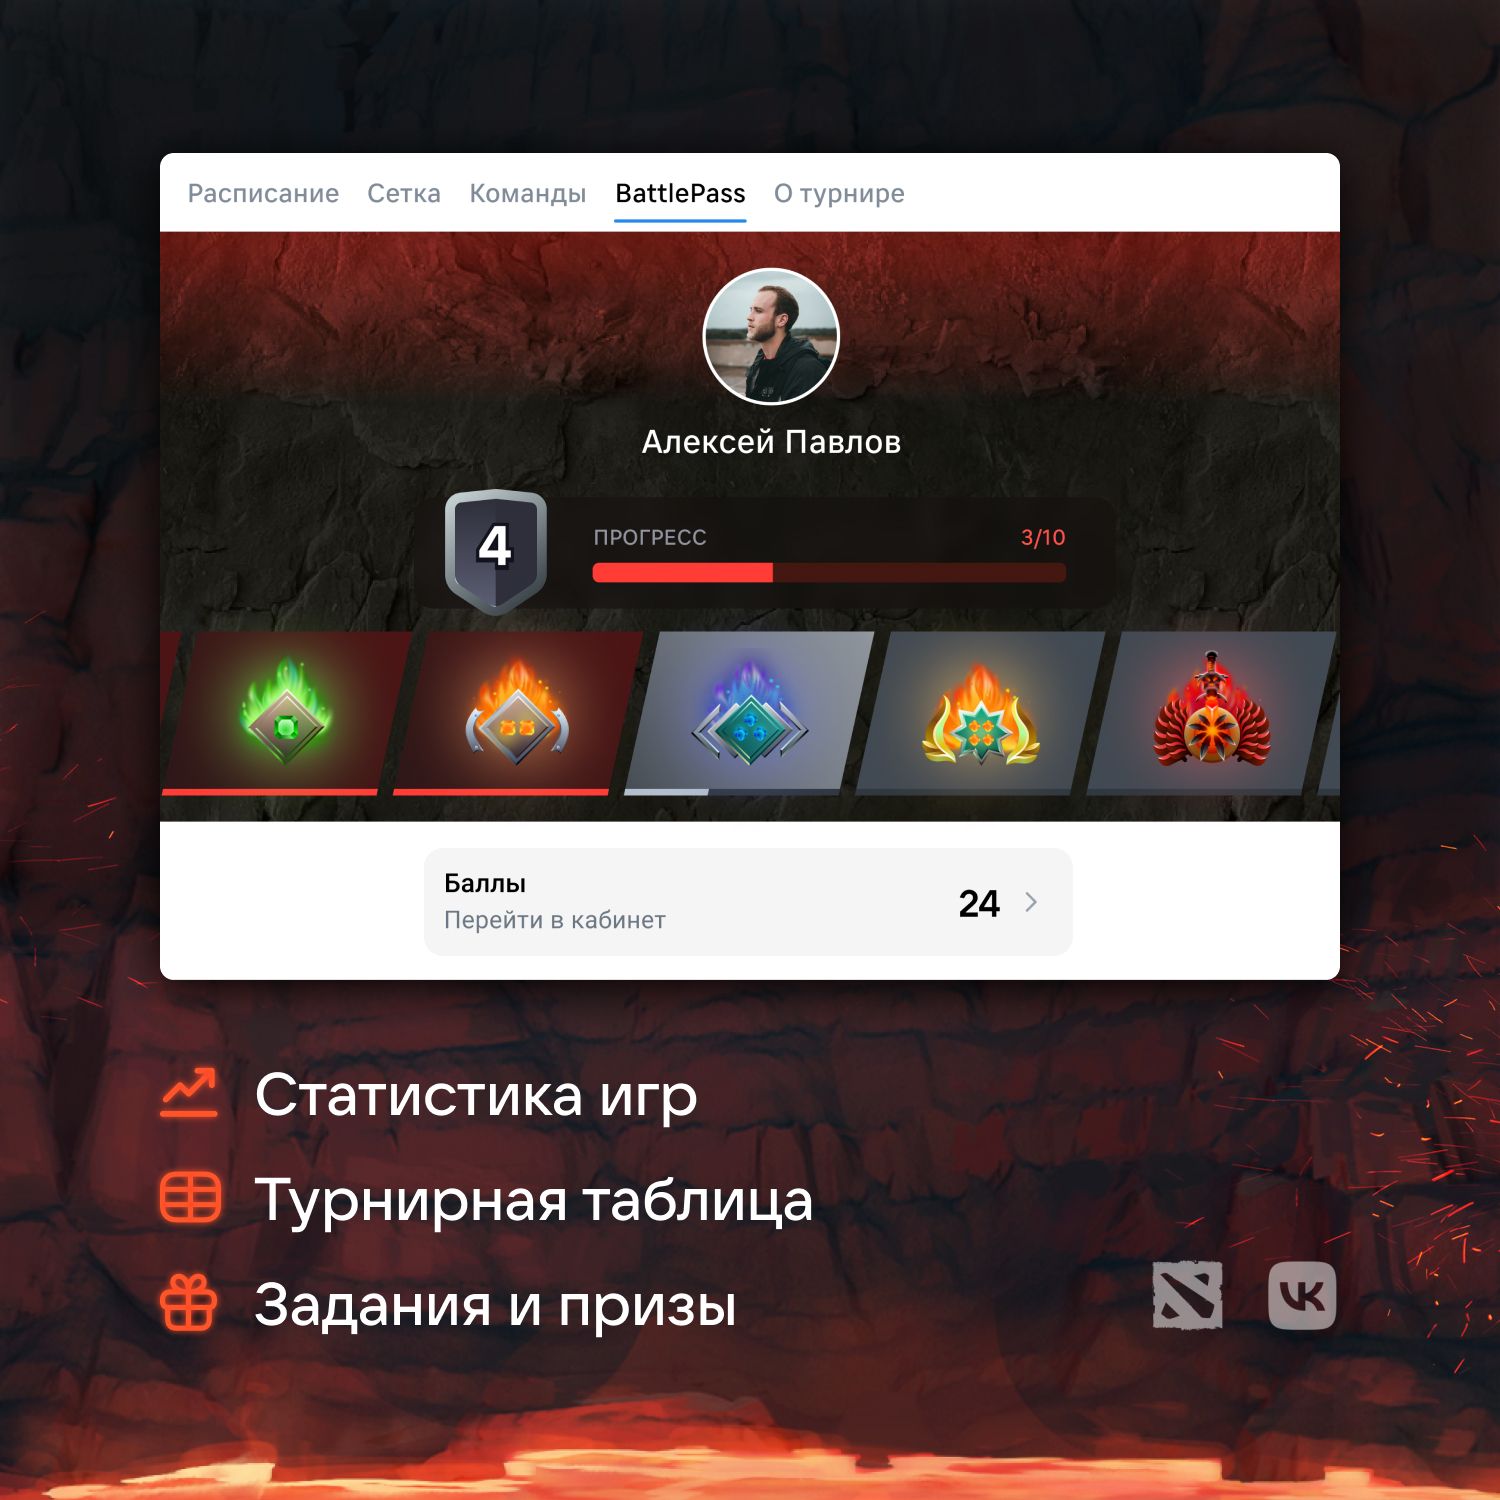 Визуальный стиль мини-апп к трансляции The International 2022 во «ВКонтакте»